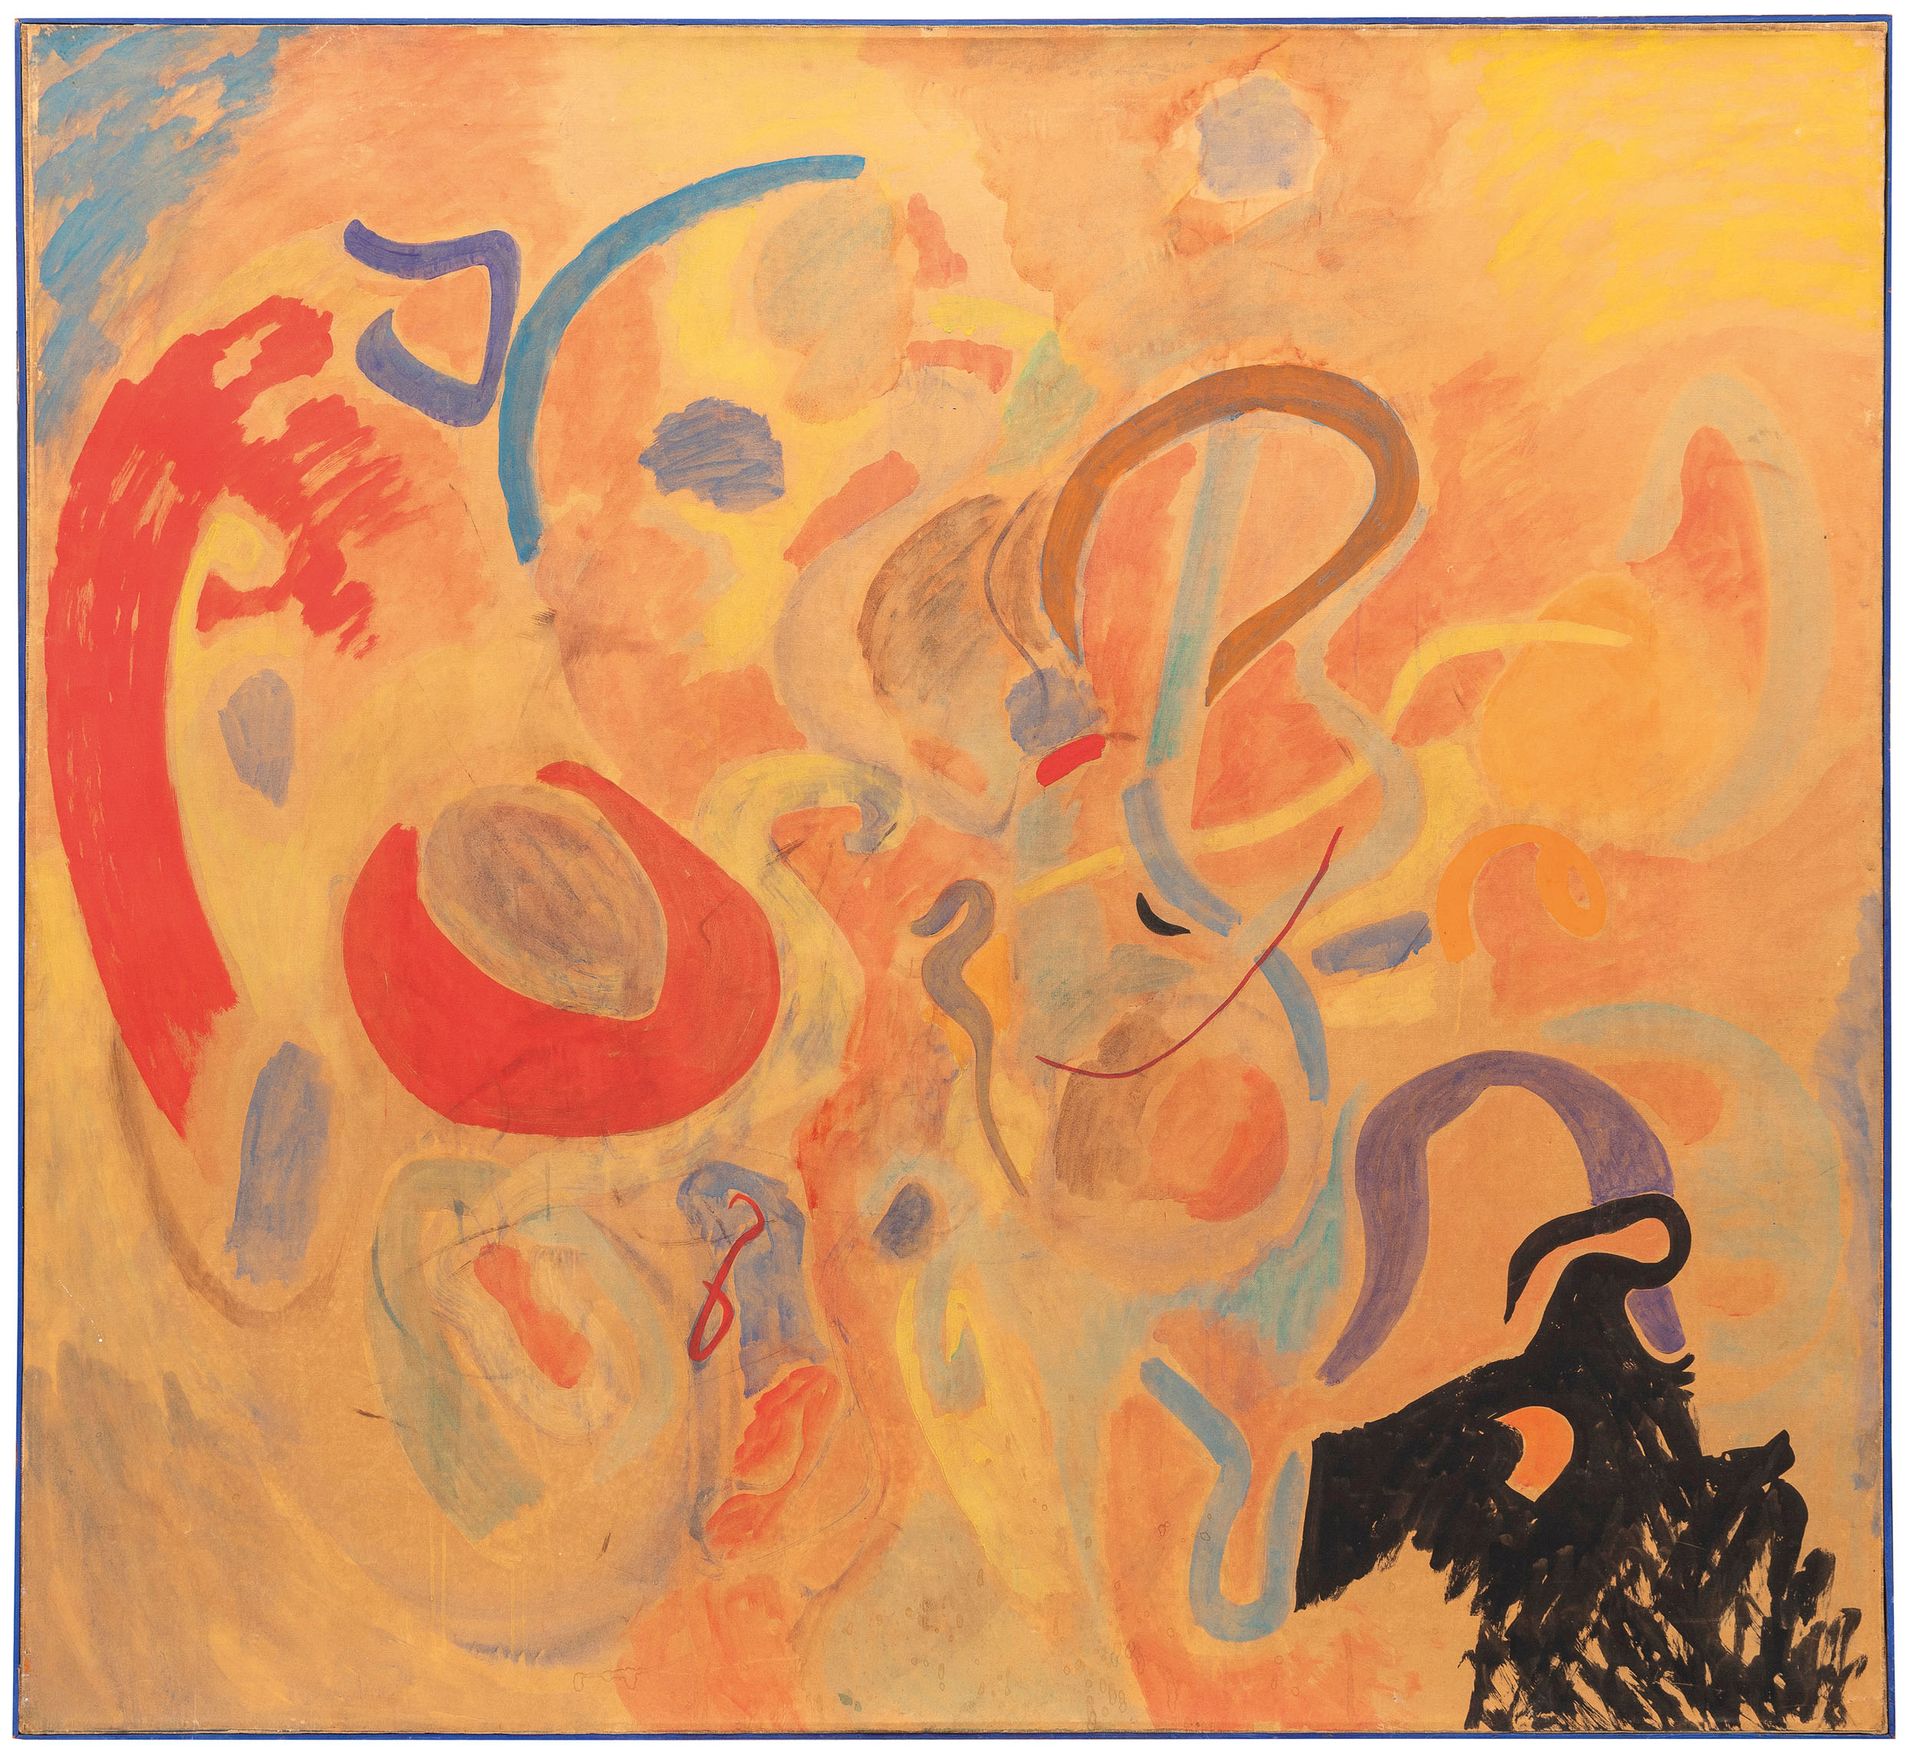 TANCREDI Feltre 1927 ; Rome 1964
Homage to Kandinski, Klee, Picasso and Osvaldo &hellip;